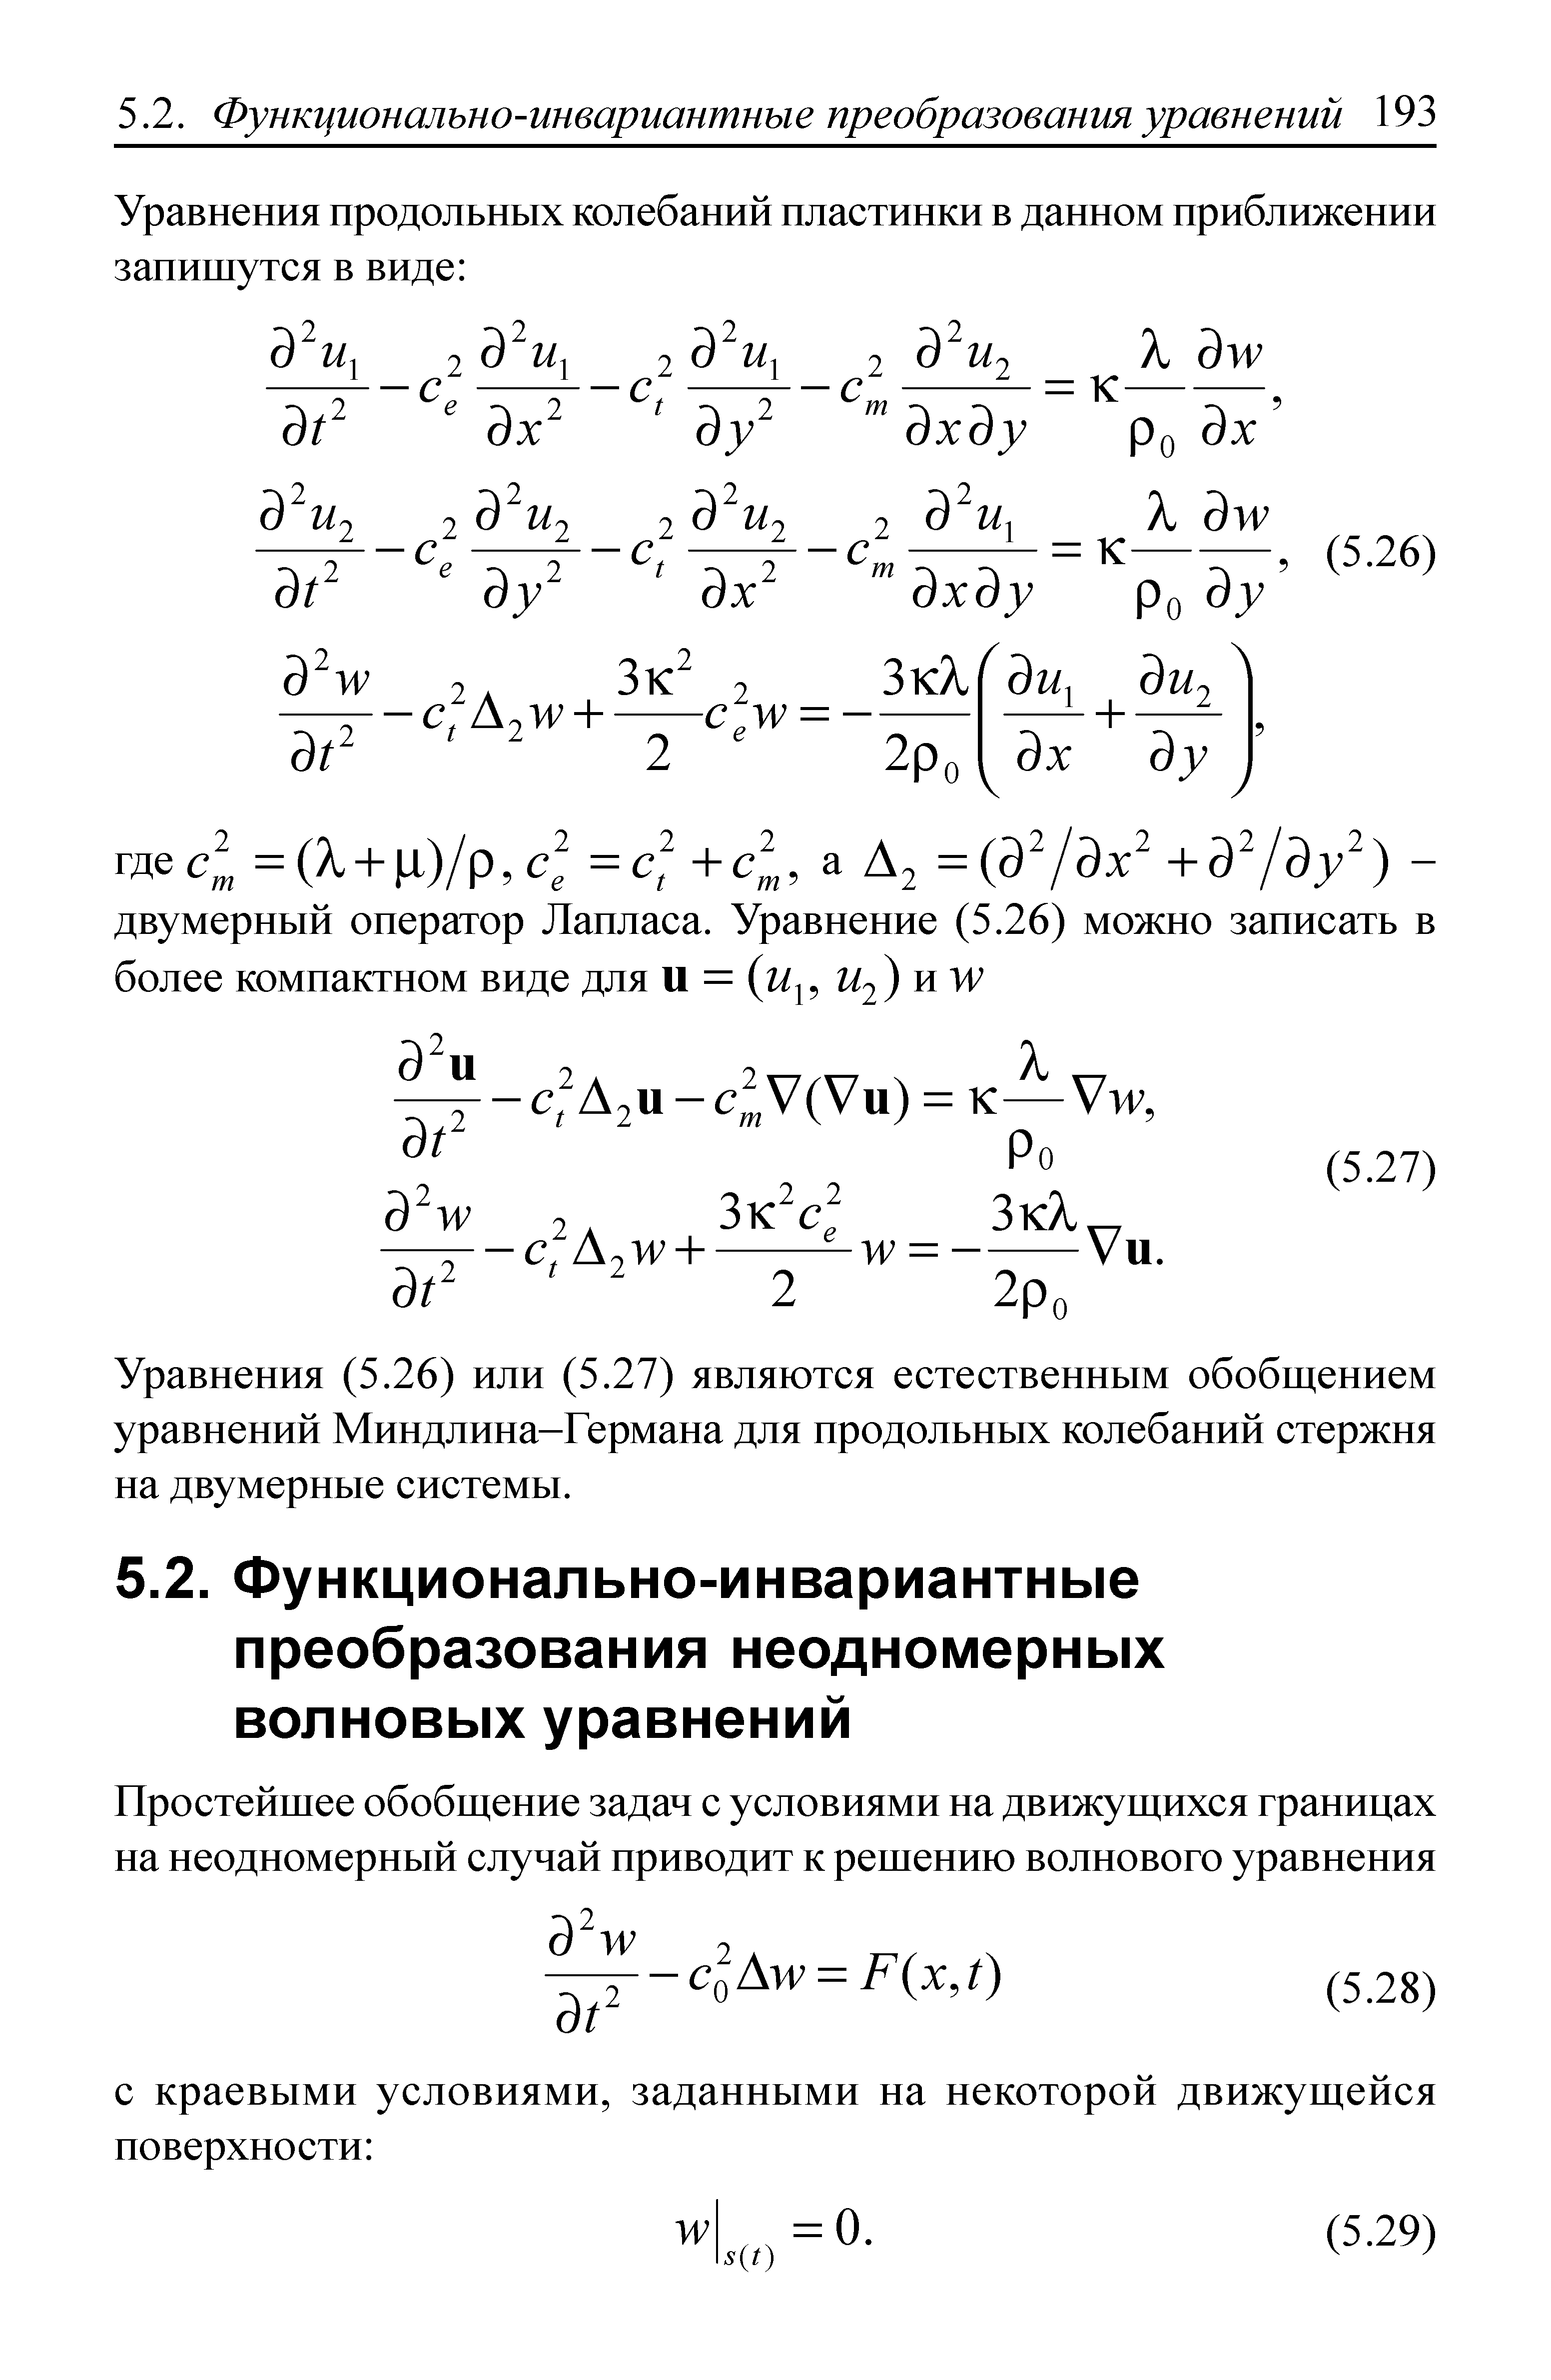 Уравнения (5.26) или (5.27) являются естественным обобщением уравнений Миндлина-Германа для продольных колебаний стержня на двумерные системы.
